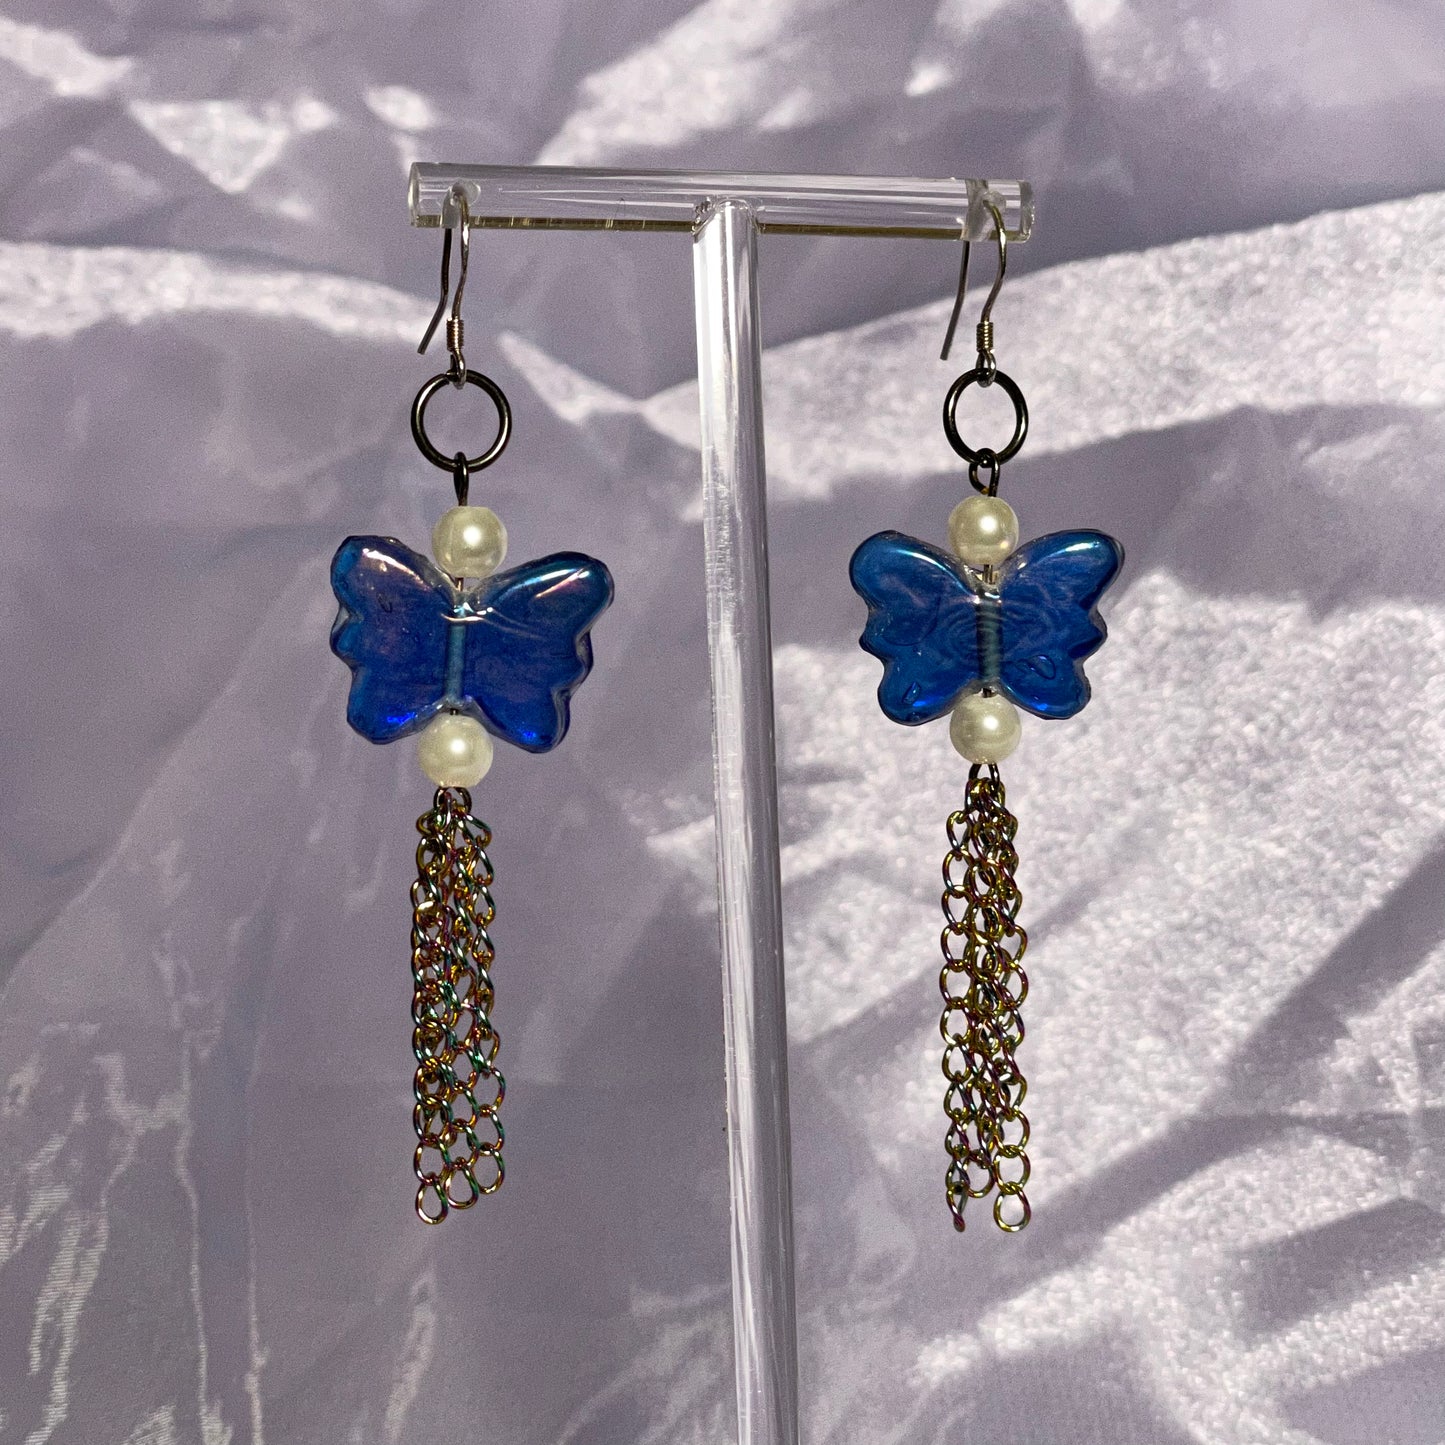 Bluest butterfly earrings